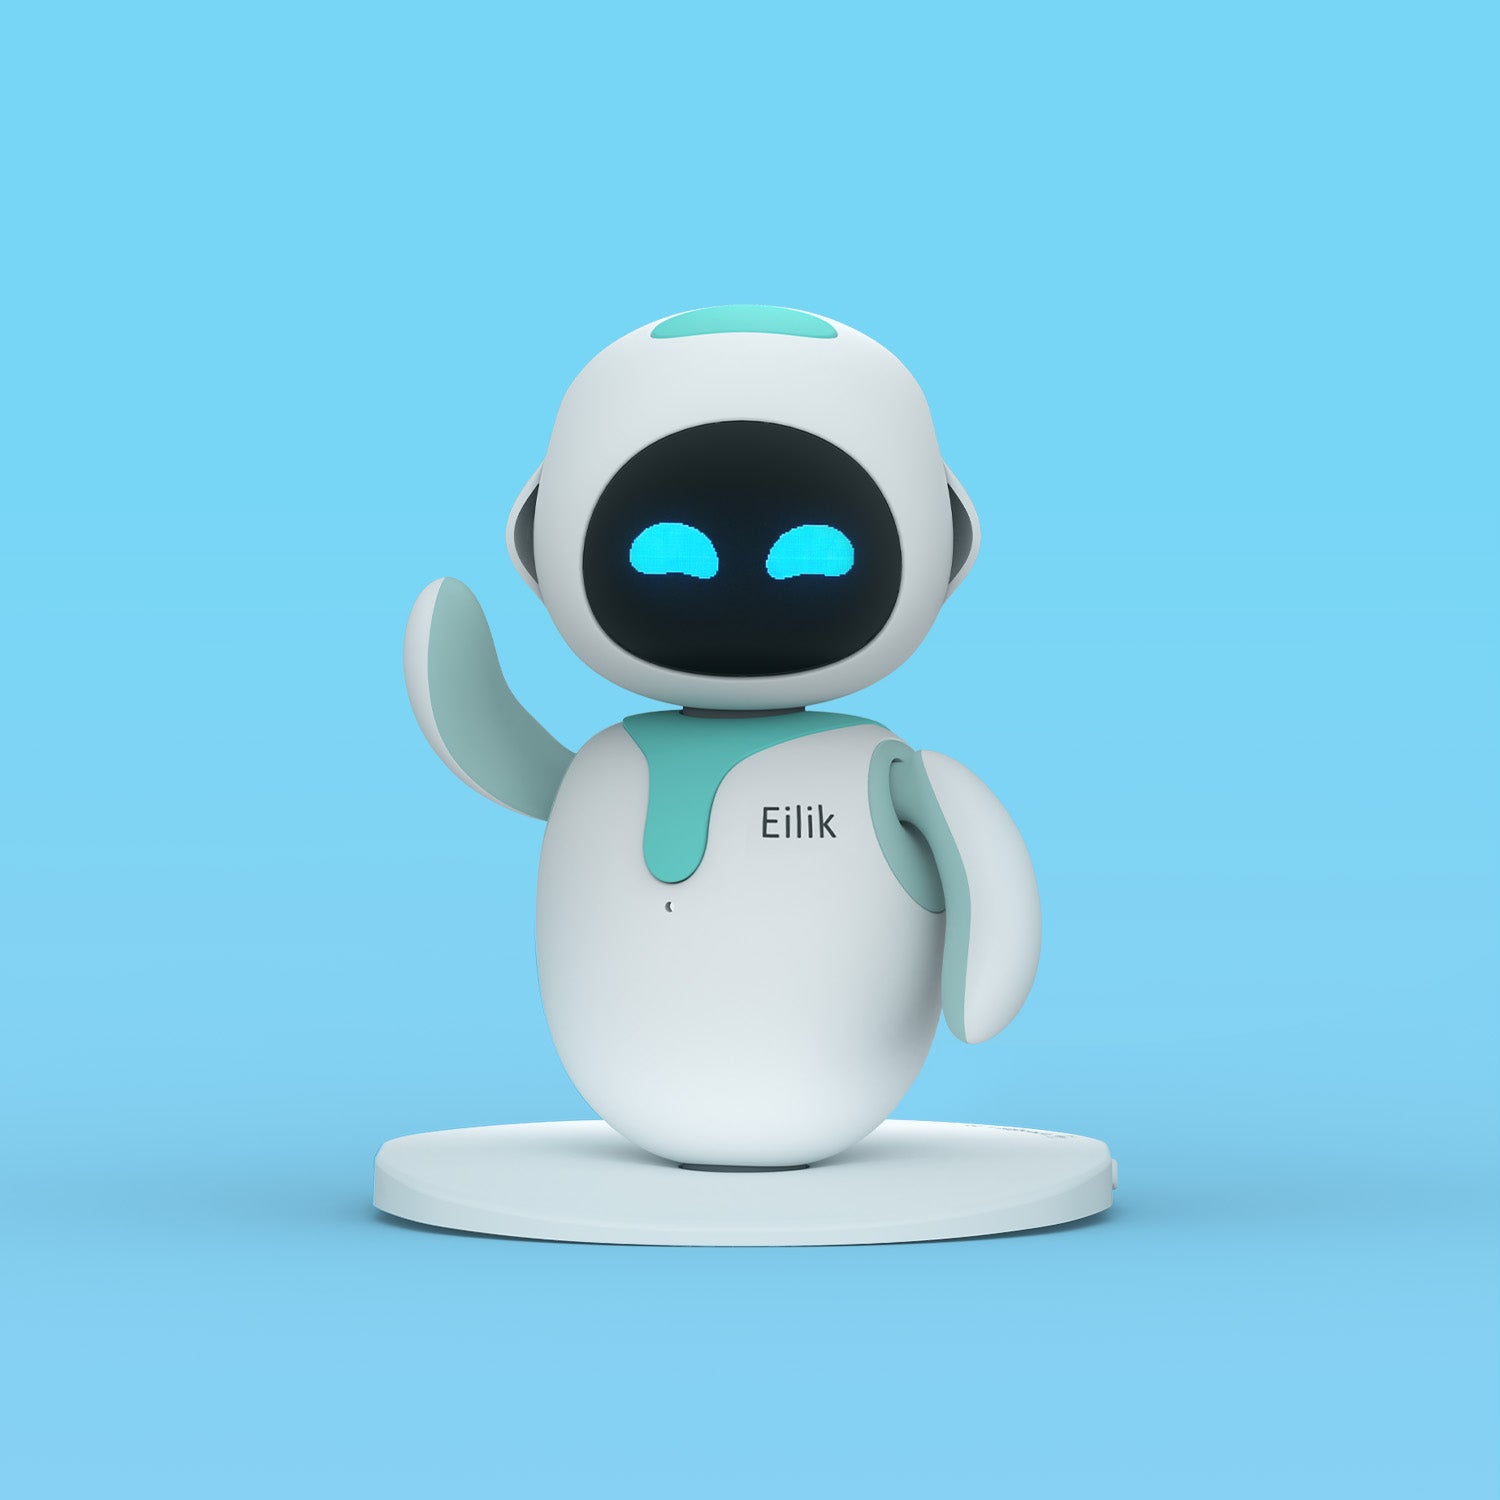 elik robot together｜TikTok Search, elik robot 